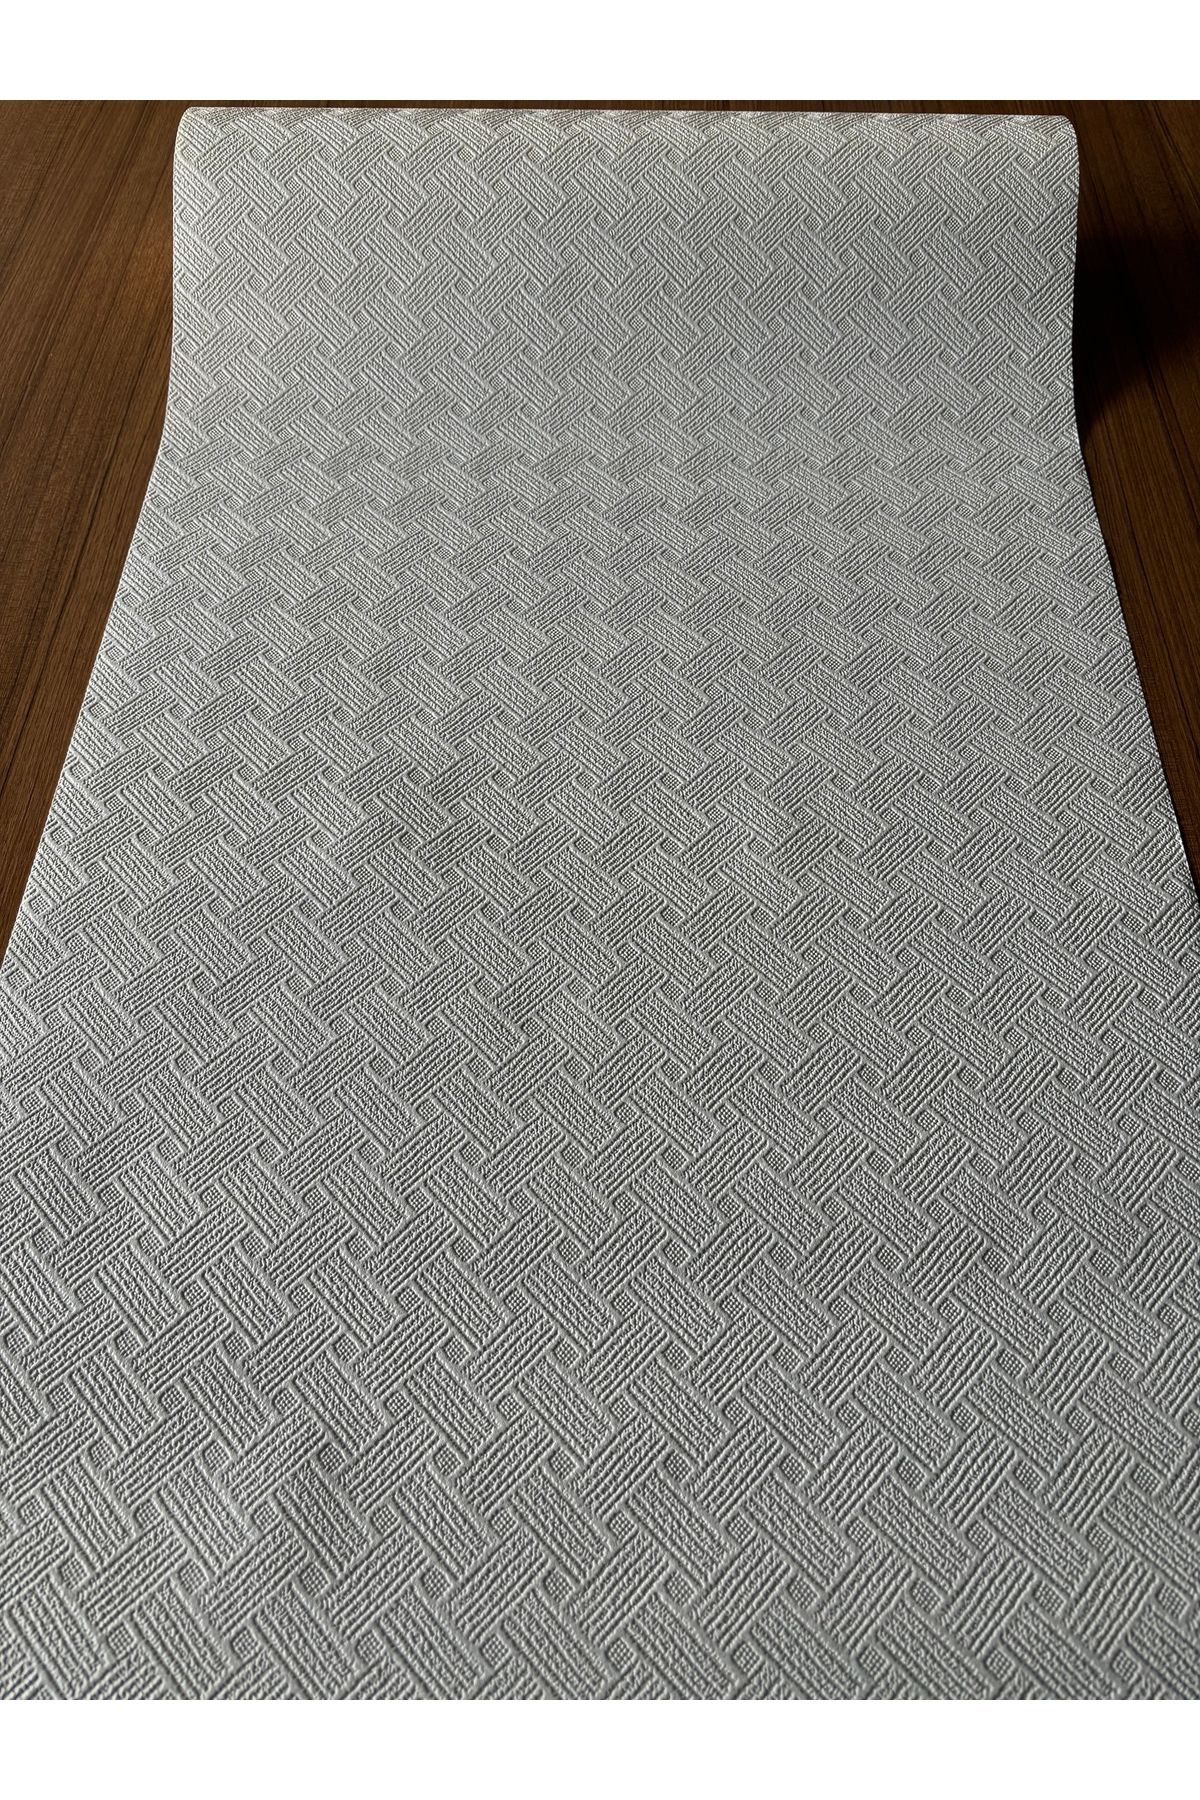 BAŞYAPI DİZAYN Kırık Beyaz Boyanabilir Geometrik Desenli Ithal Duvar Kağıdı (5m²)